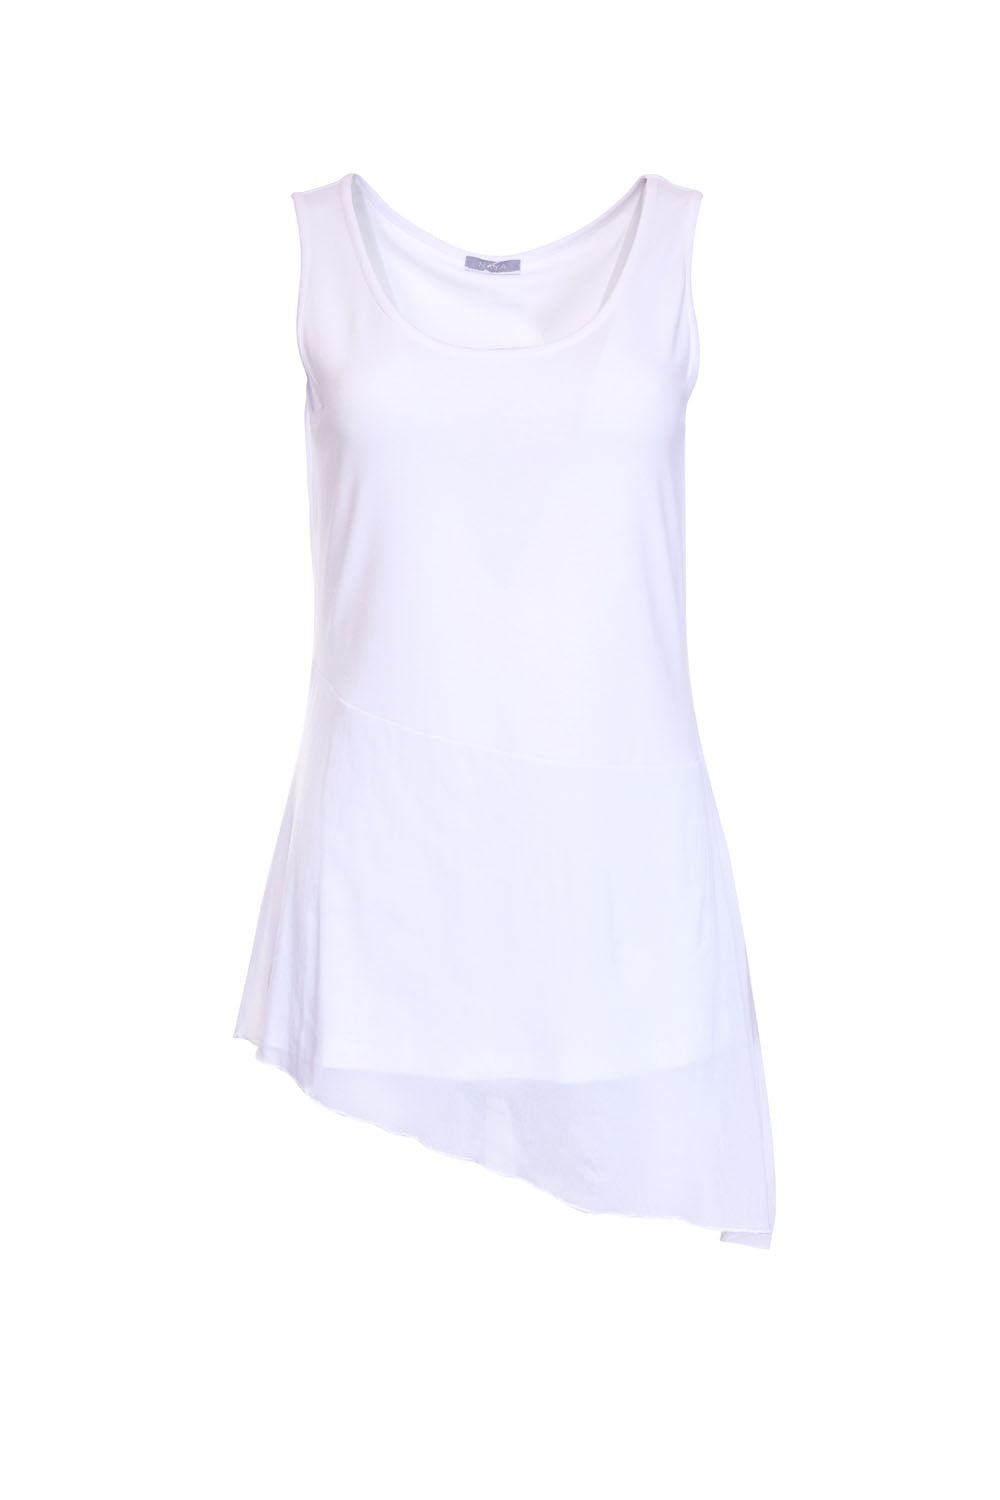 White asymmetric hem vest - Maya Maya Ltd